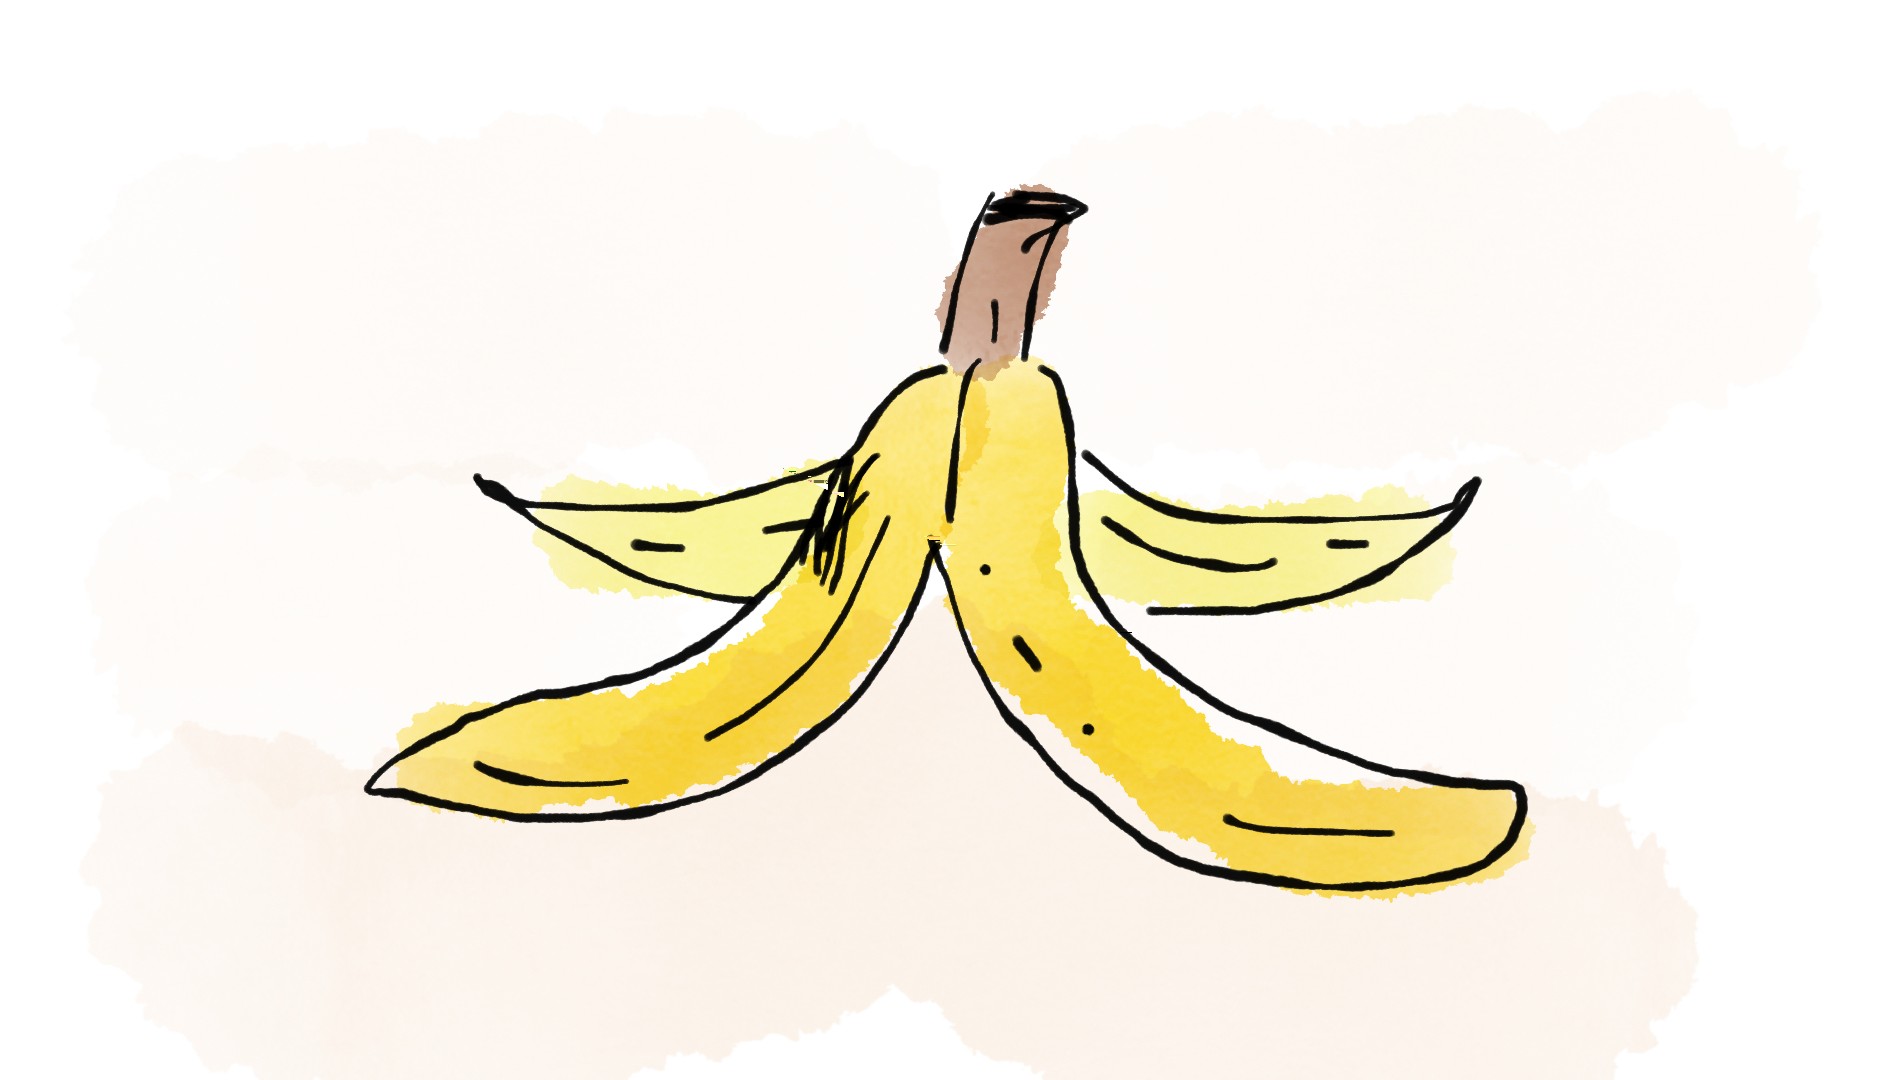 Drawing of a banana peel